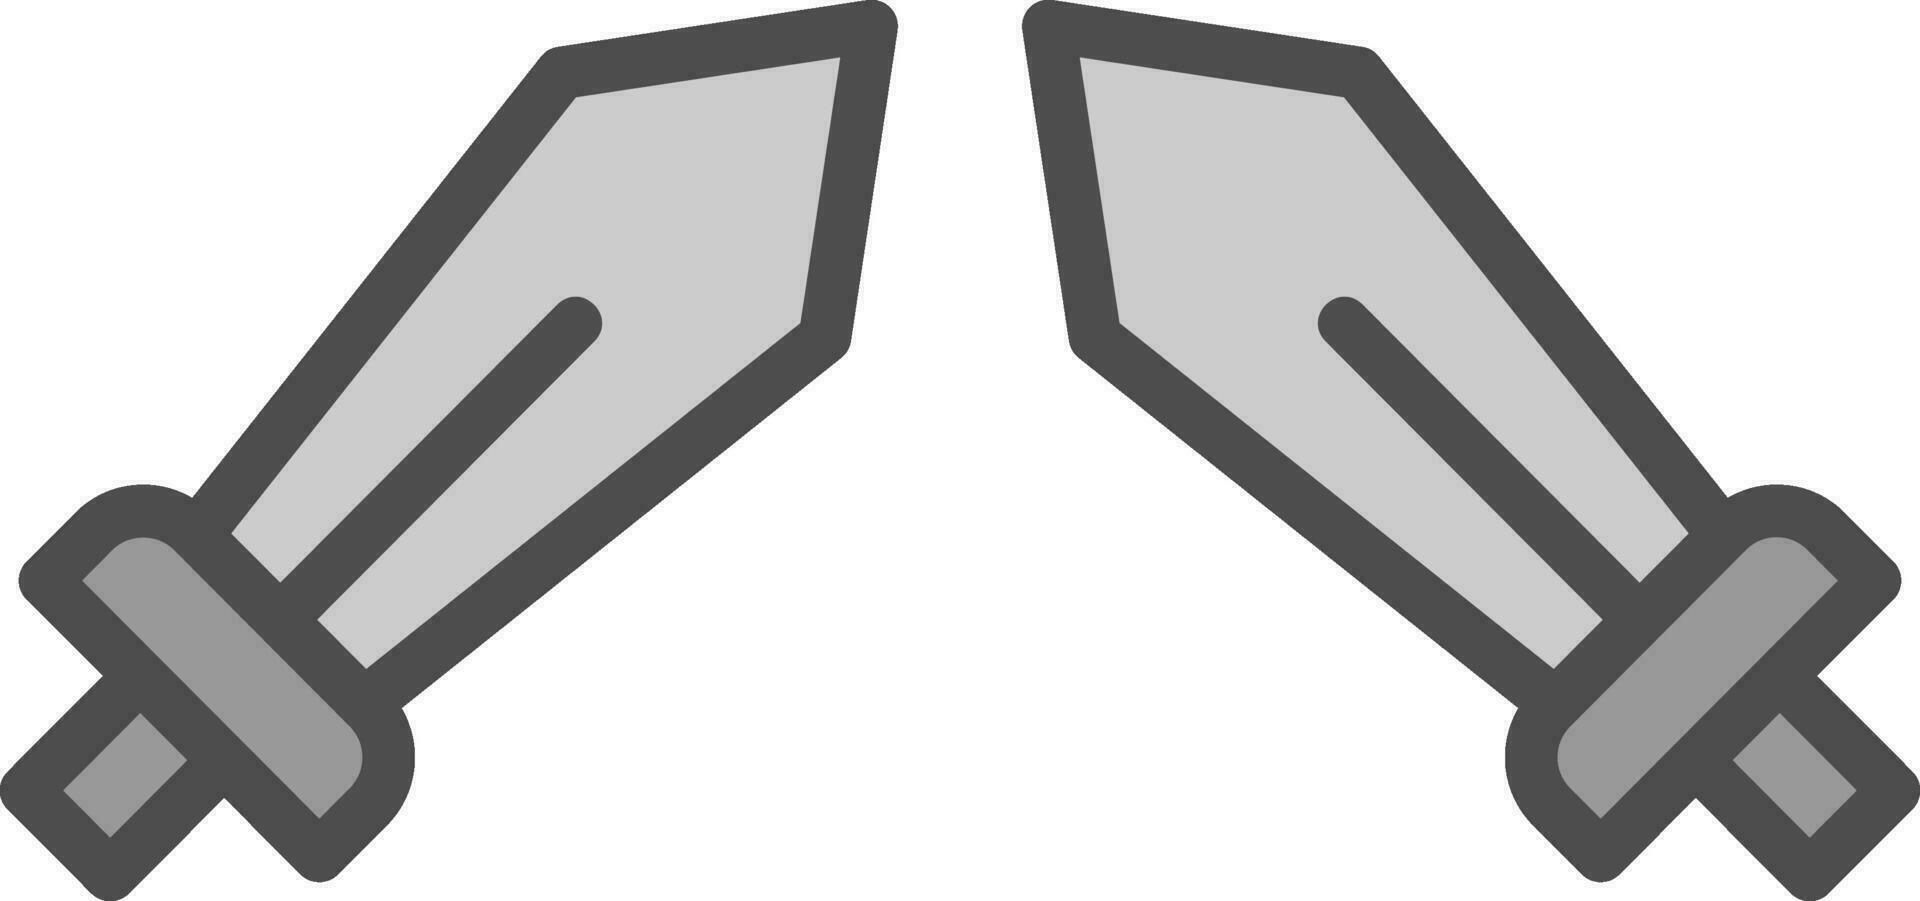 design de ícone de vetor de espada